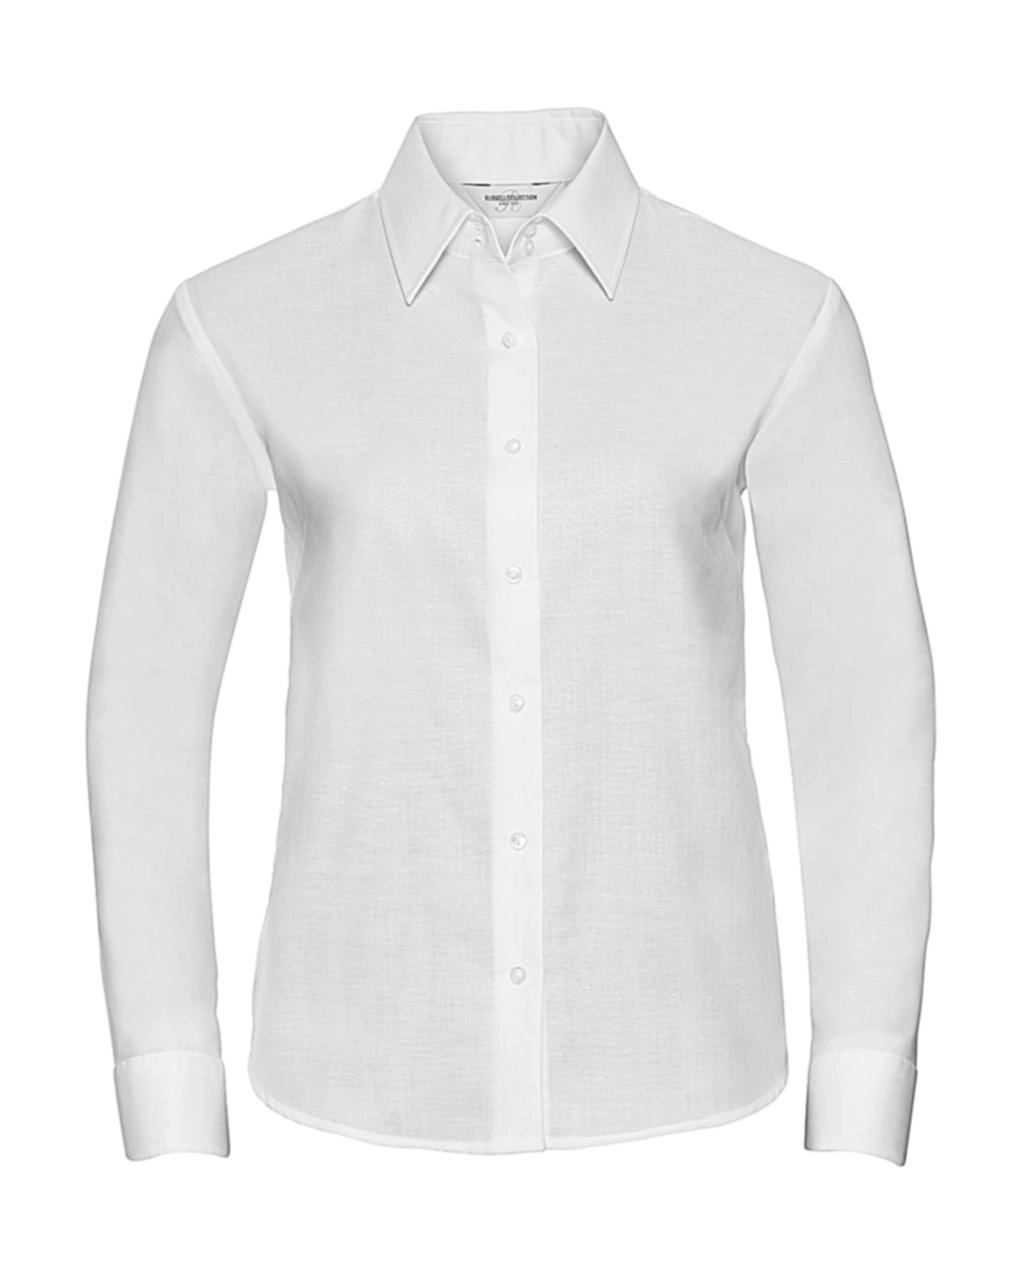 Ladies` Classic Oxford Shirt LS zum Besticken und Bedrucken in der Farbe White mit Ihren Logo, Schriftzug oder Motiv.